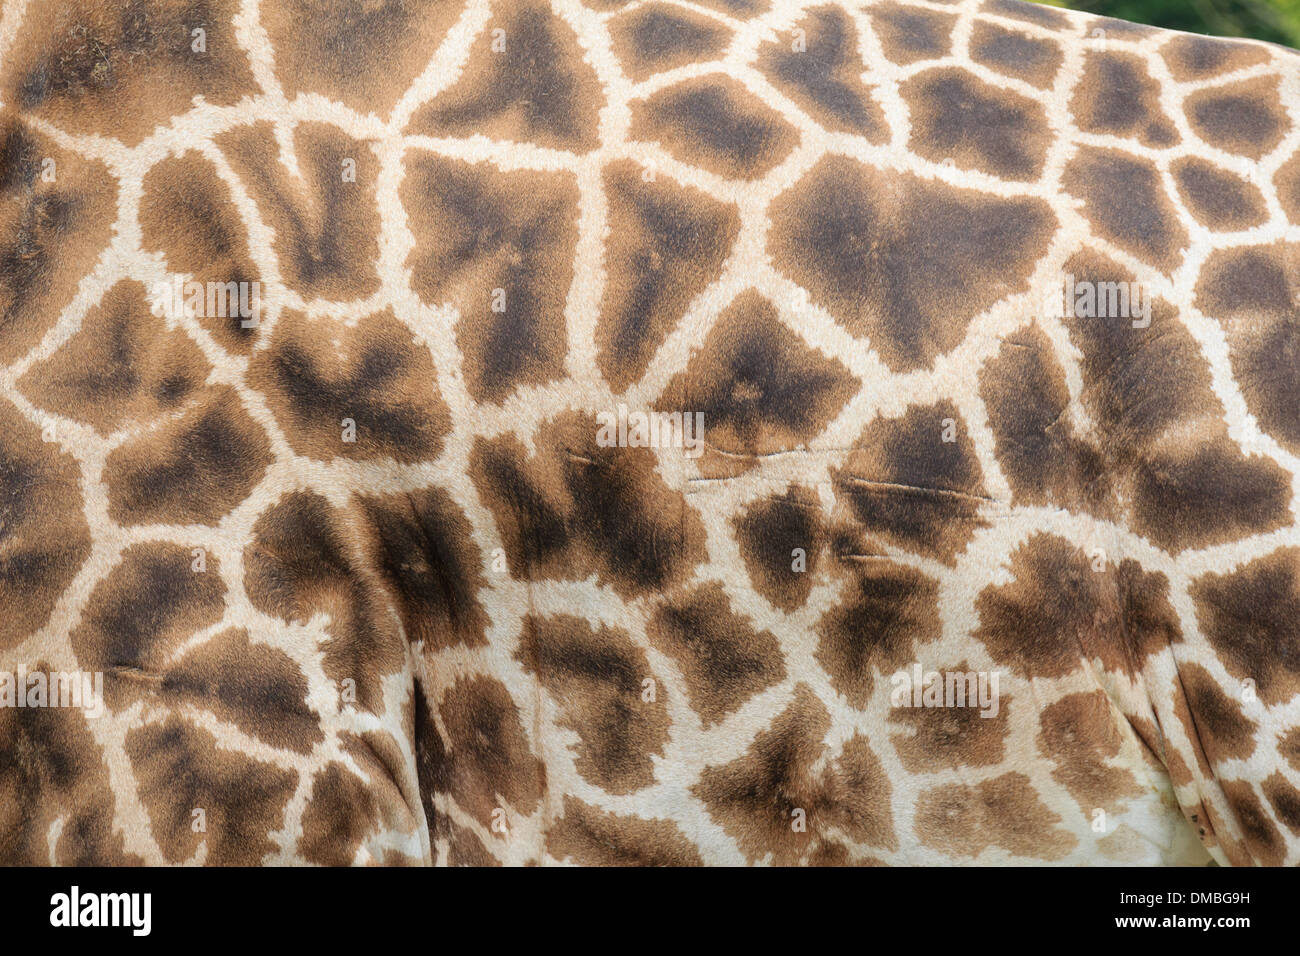 La girafe, le motif de la fourrure (Giraffa camelopardalis) // girafe, dessin du pelage (Giraffa camelopardalis) Banque D'Images